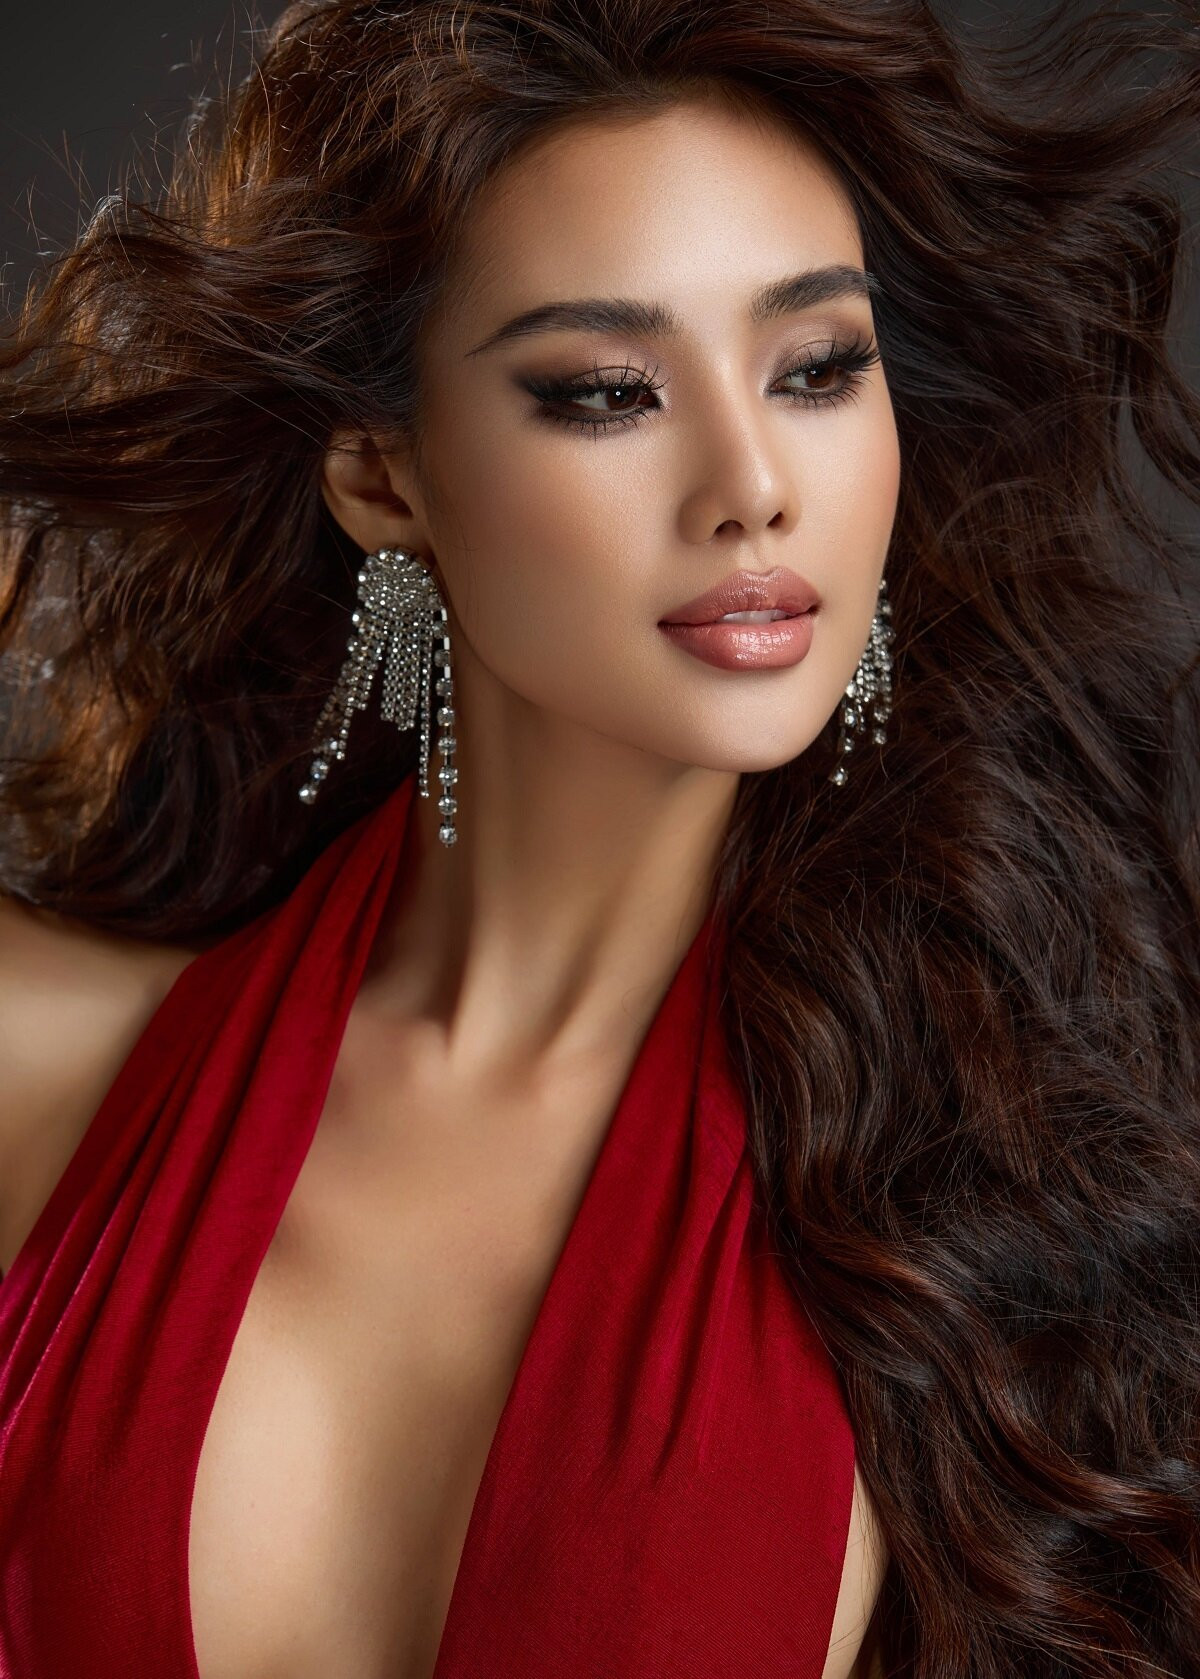 Bên cạnh công việc diễn viên và người mẫu tự do, Huyền Trang cũng đang đảm nhiệm vai trò thư ký cho tổng giám đốc một nhãn hàng thời trang.